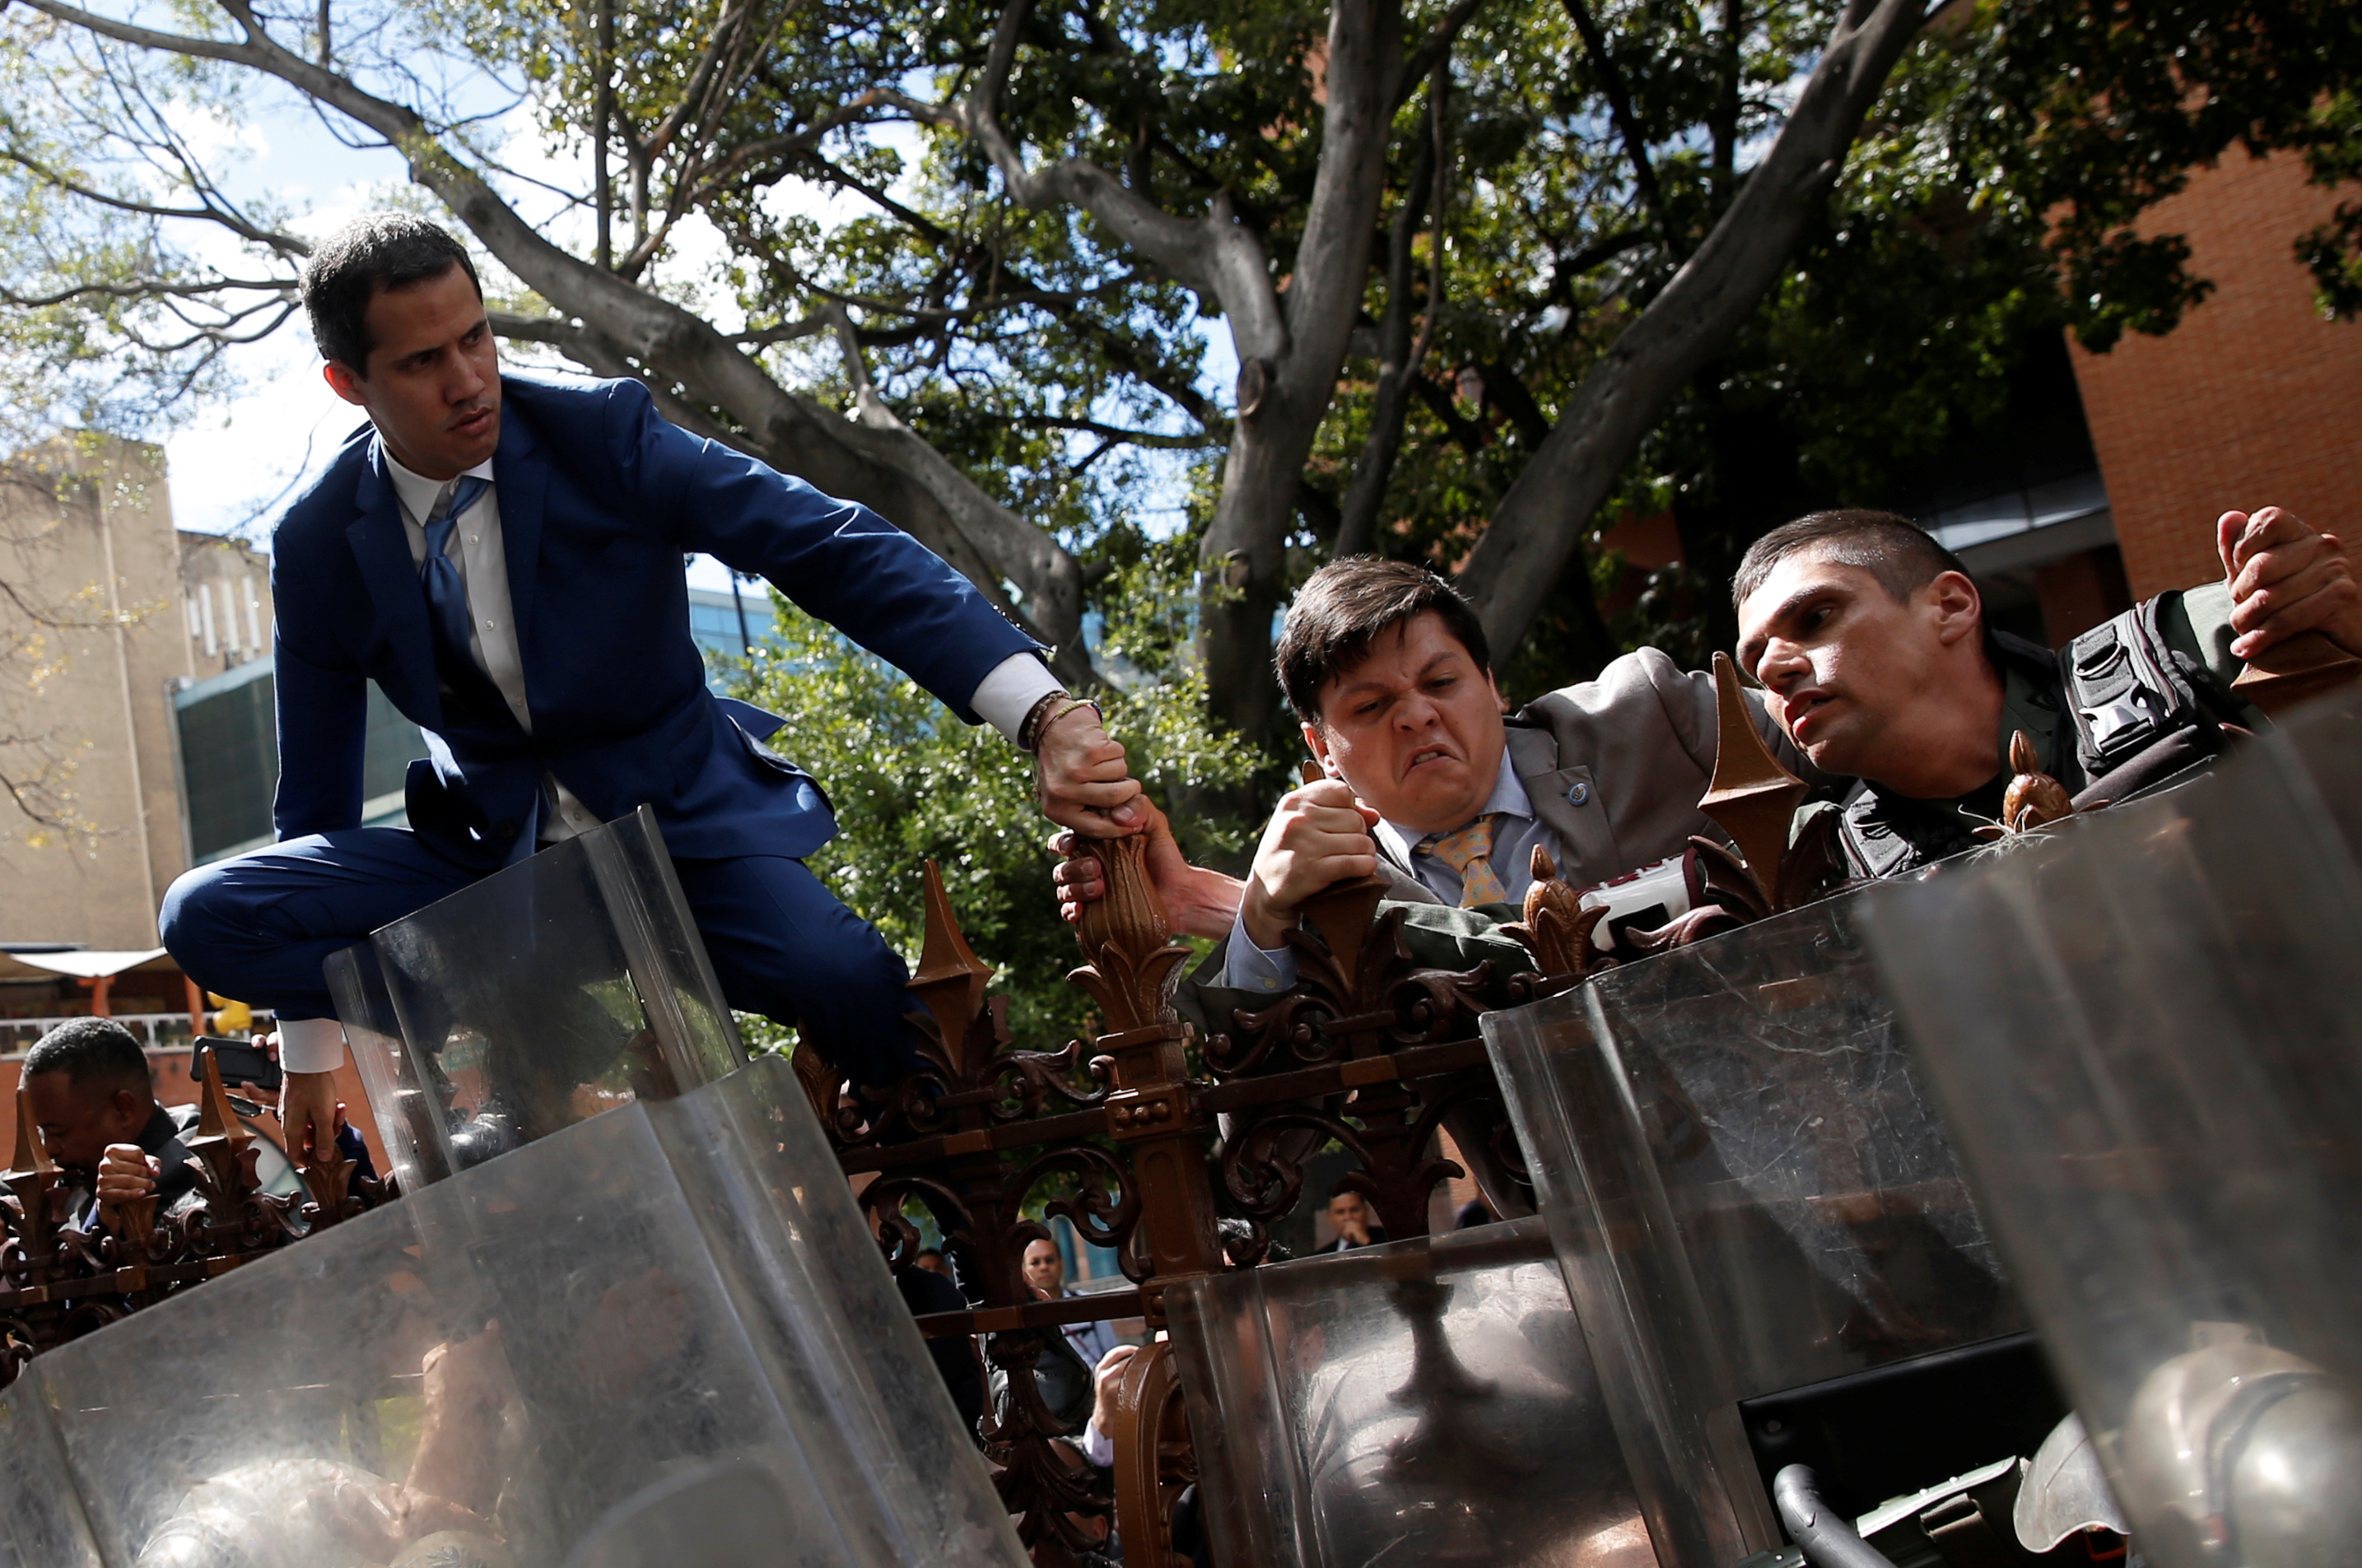 El momento en el que Guaidó intentó entrar al hemiciclo de Sesiones de la AN #5Ene (Fotos y Videos)